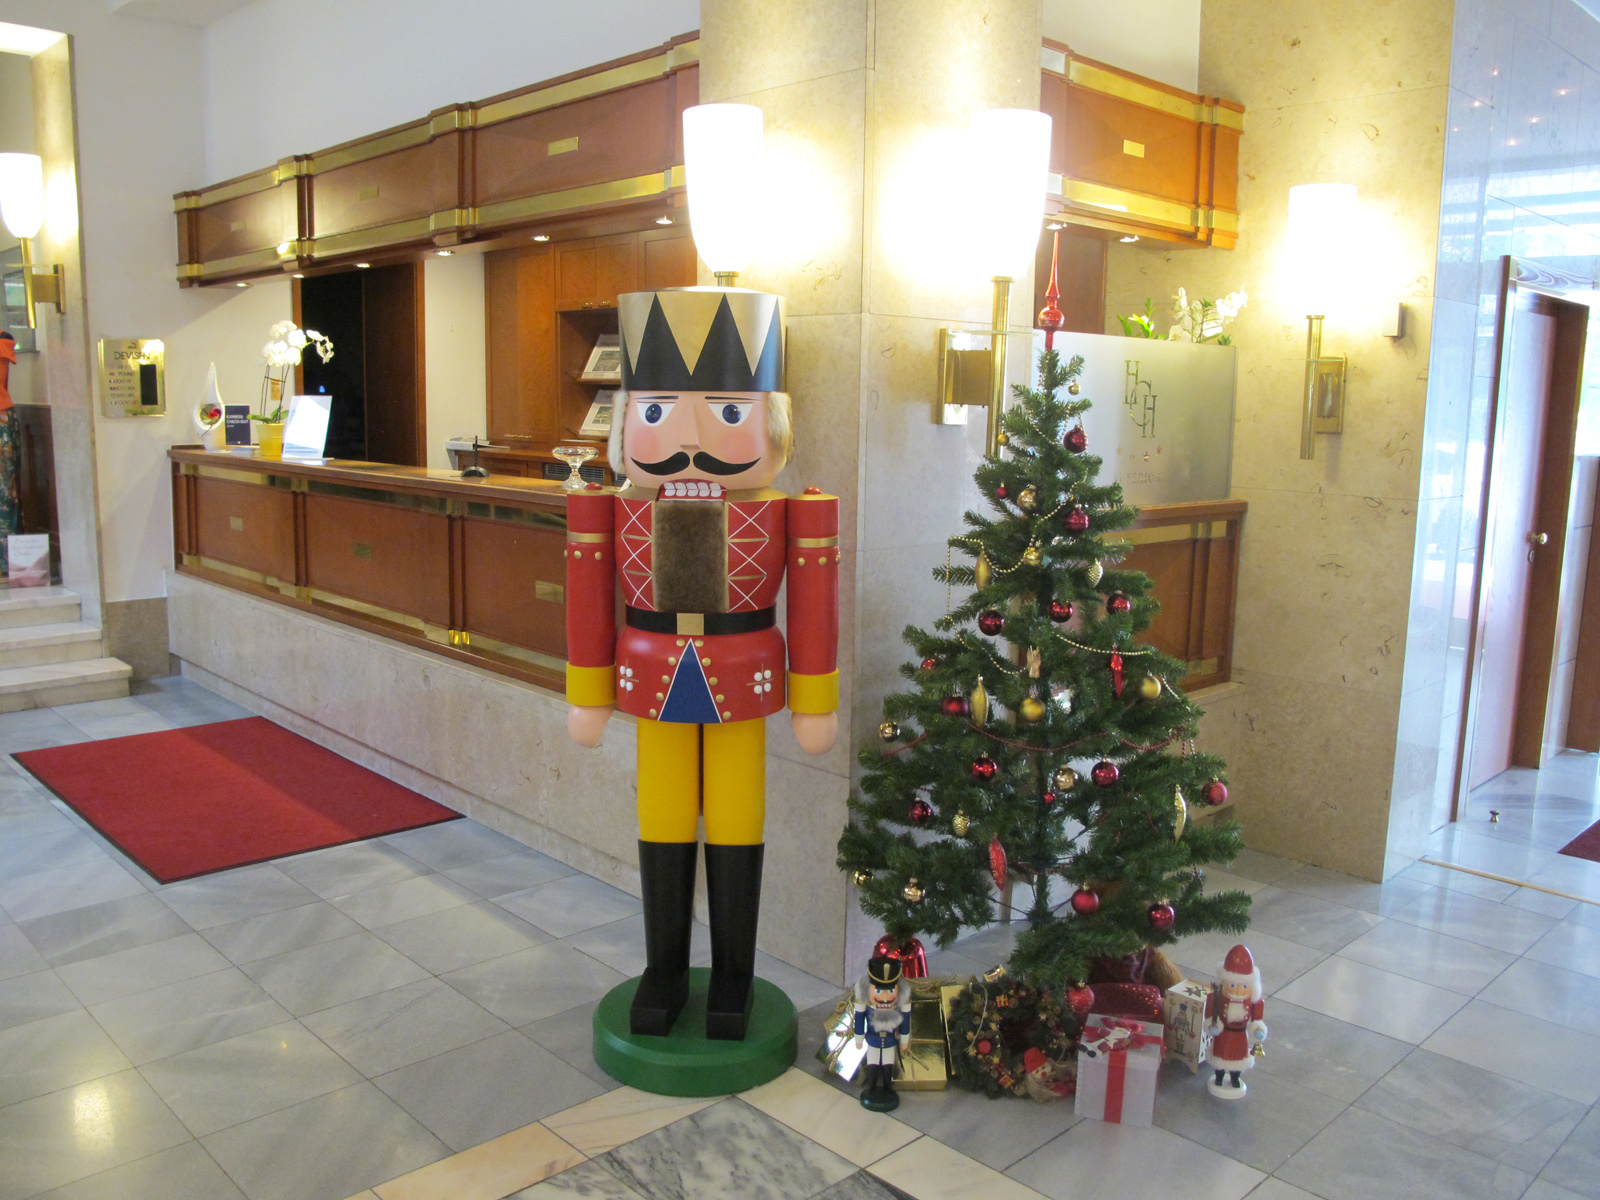 Weihnachtsdekoration für Hotels: lebensgroßer Nussknacker an Hotelrezeption